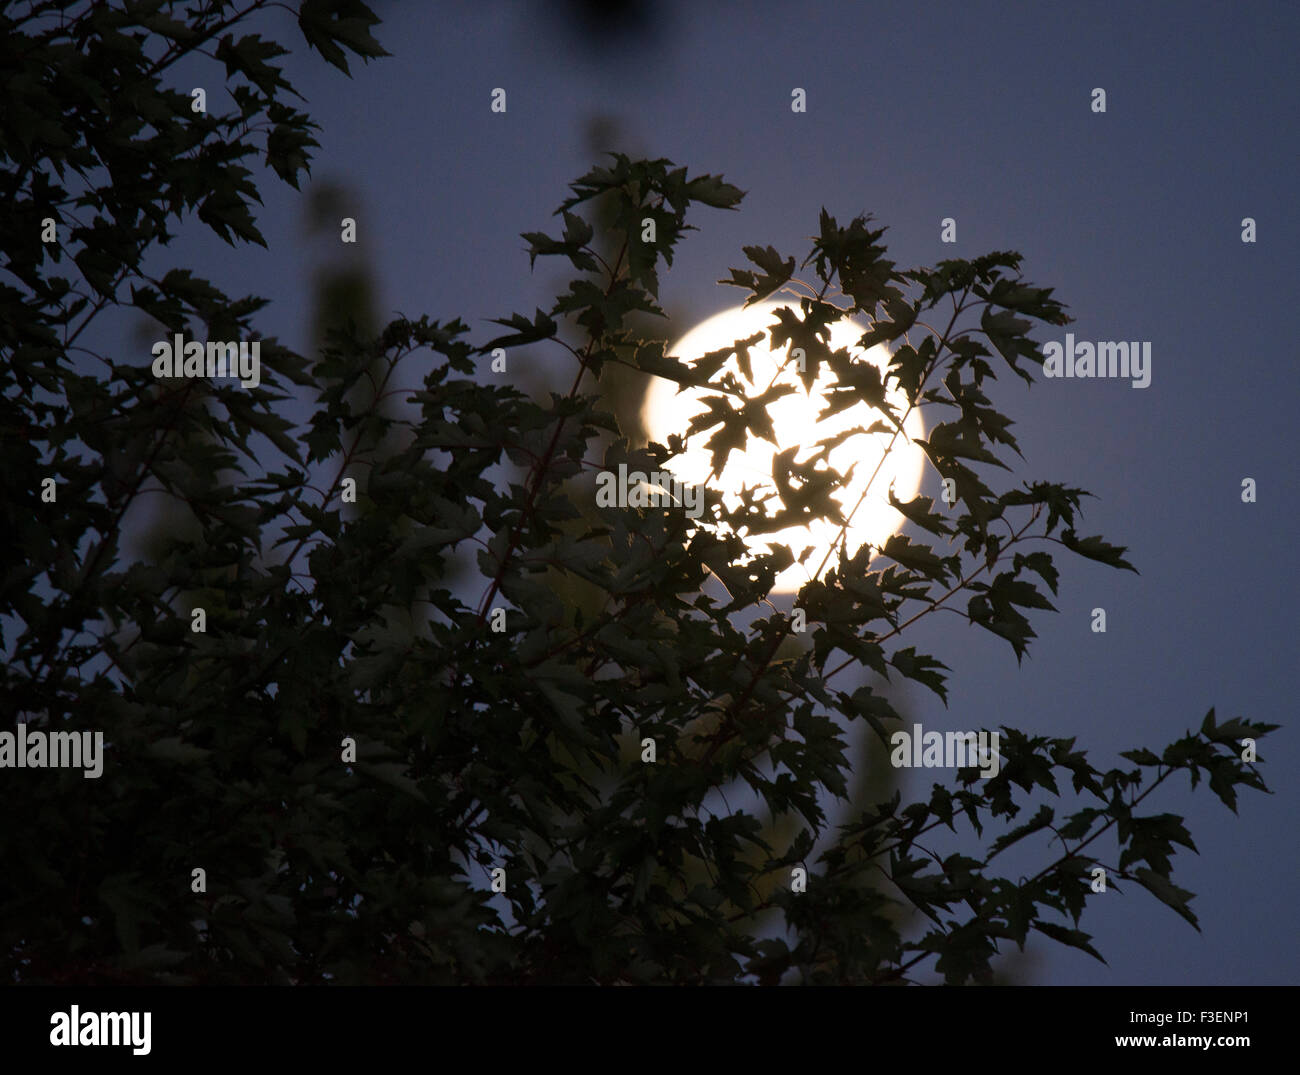 Full Moon shining through leaves of trees, Idaho, USA Stock Photo